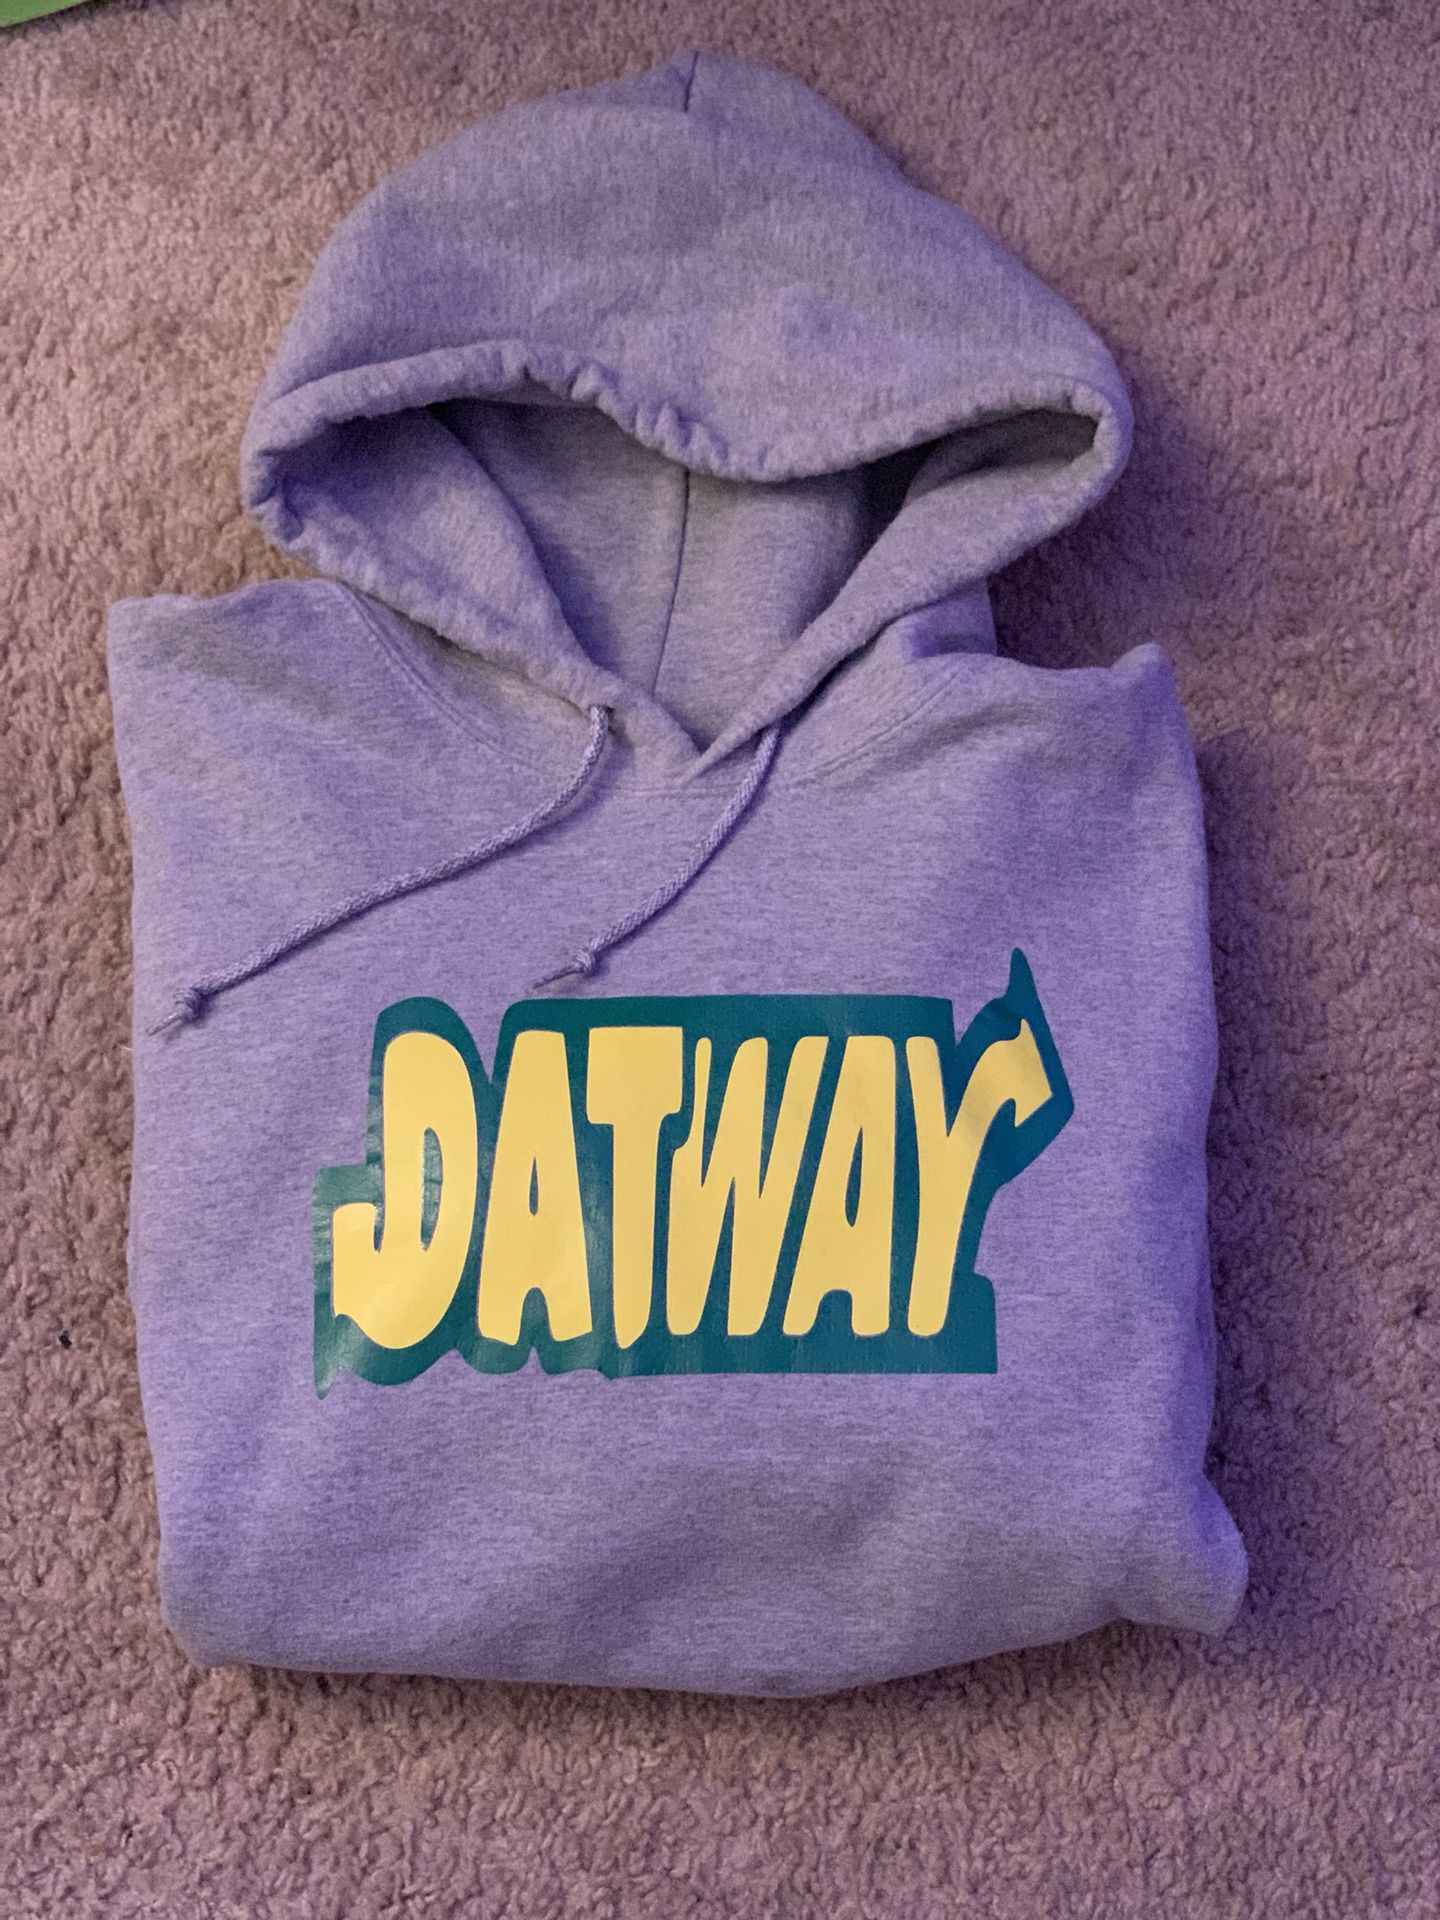 Datway Custom Hoodie - Size Large